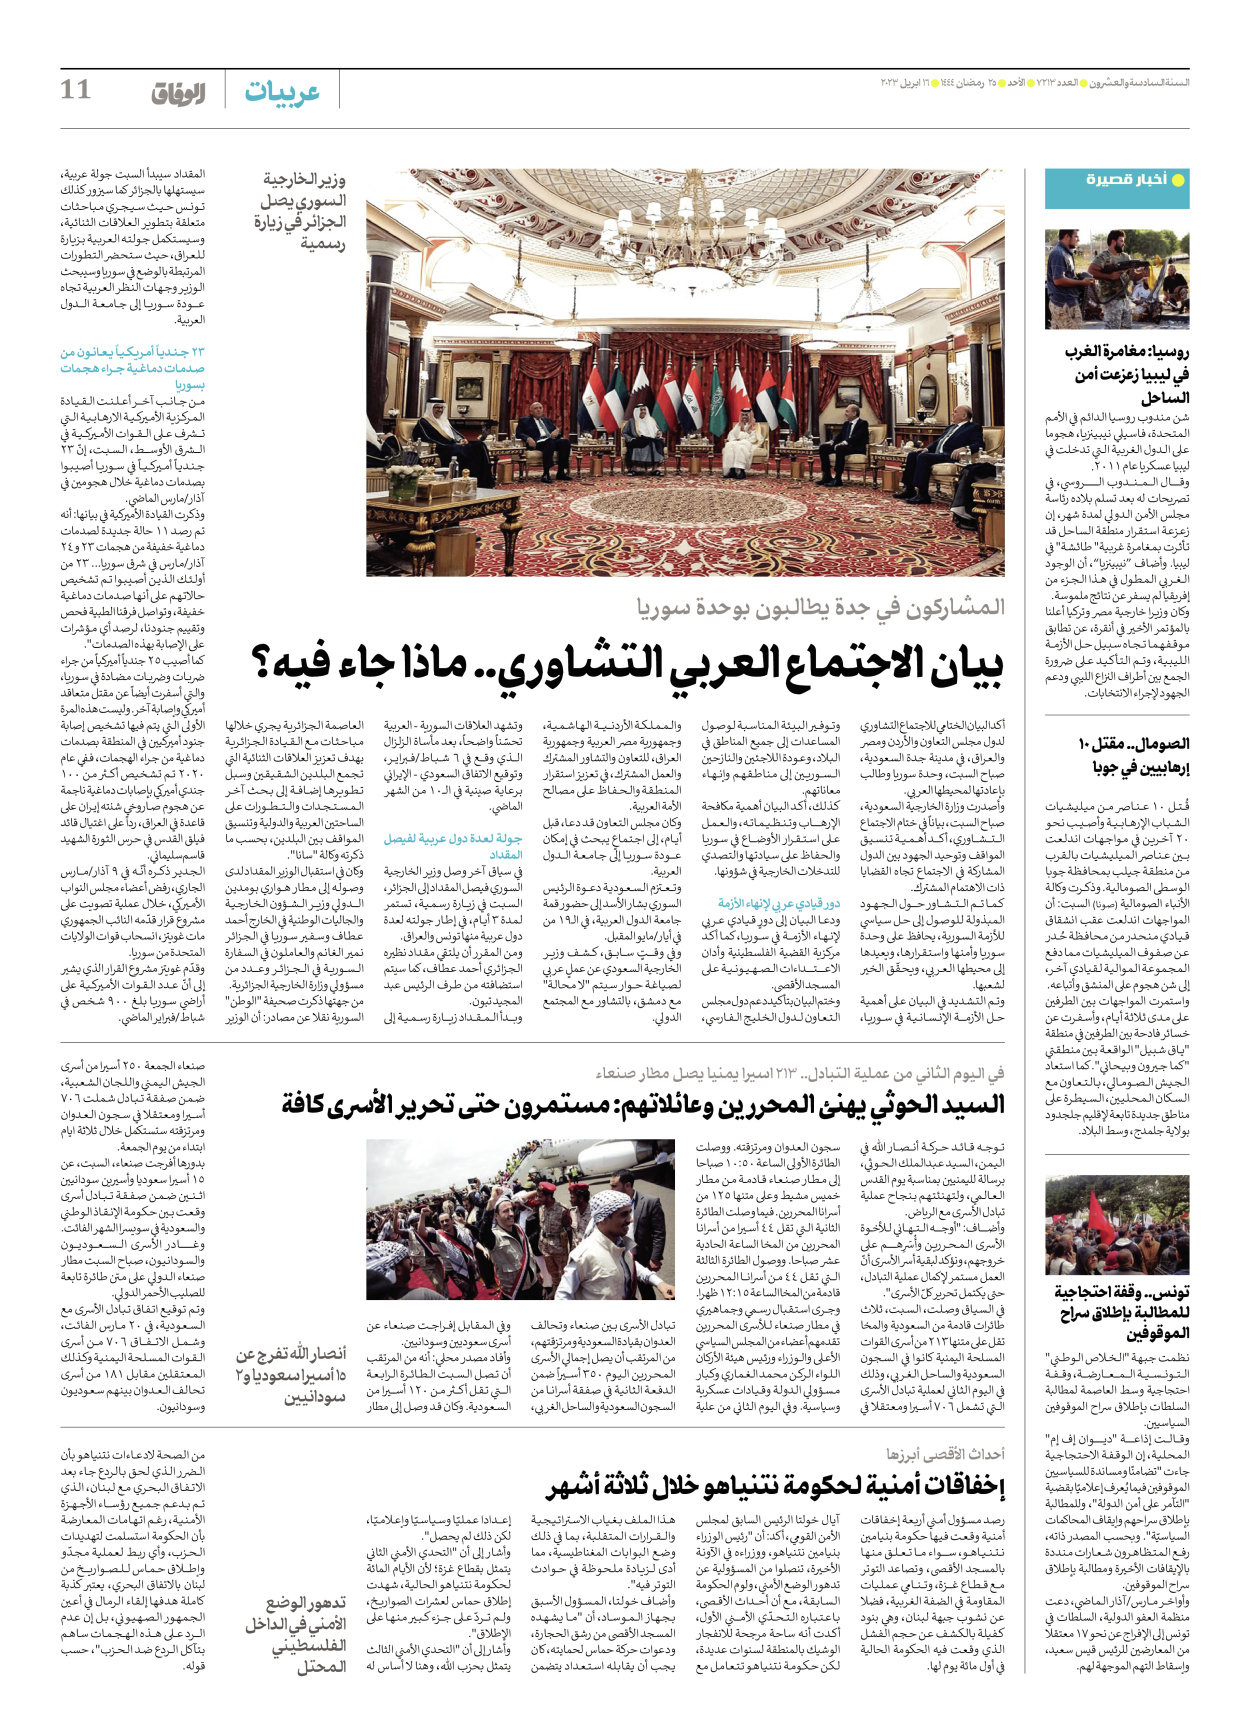 صحیفة ایران الدولیة الوفاق - العدد سبعة آلاف ومائتان وثلاثة عشر - ١٦ أبريل ٢٠٢٣ - الصفحة ۱۱